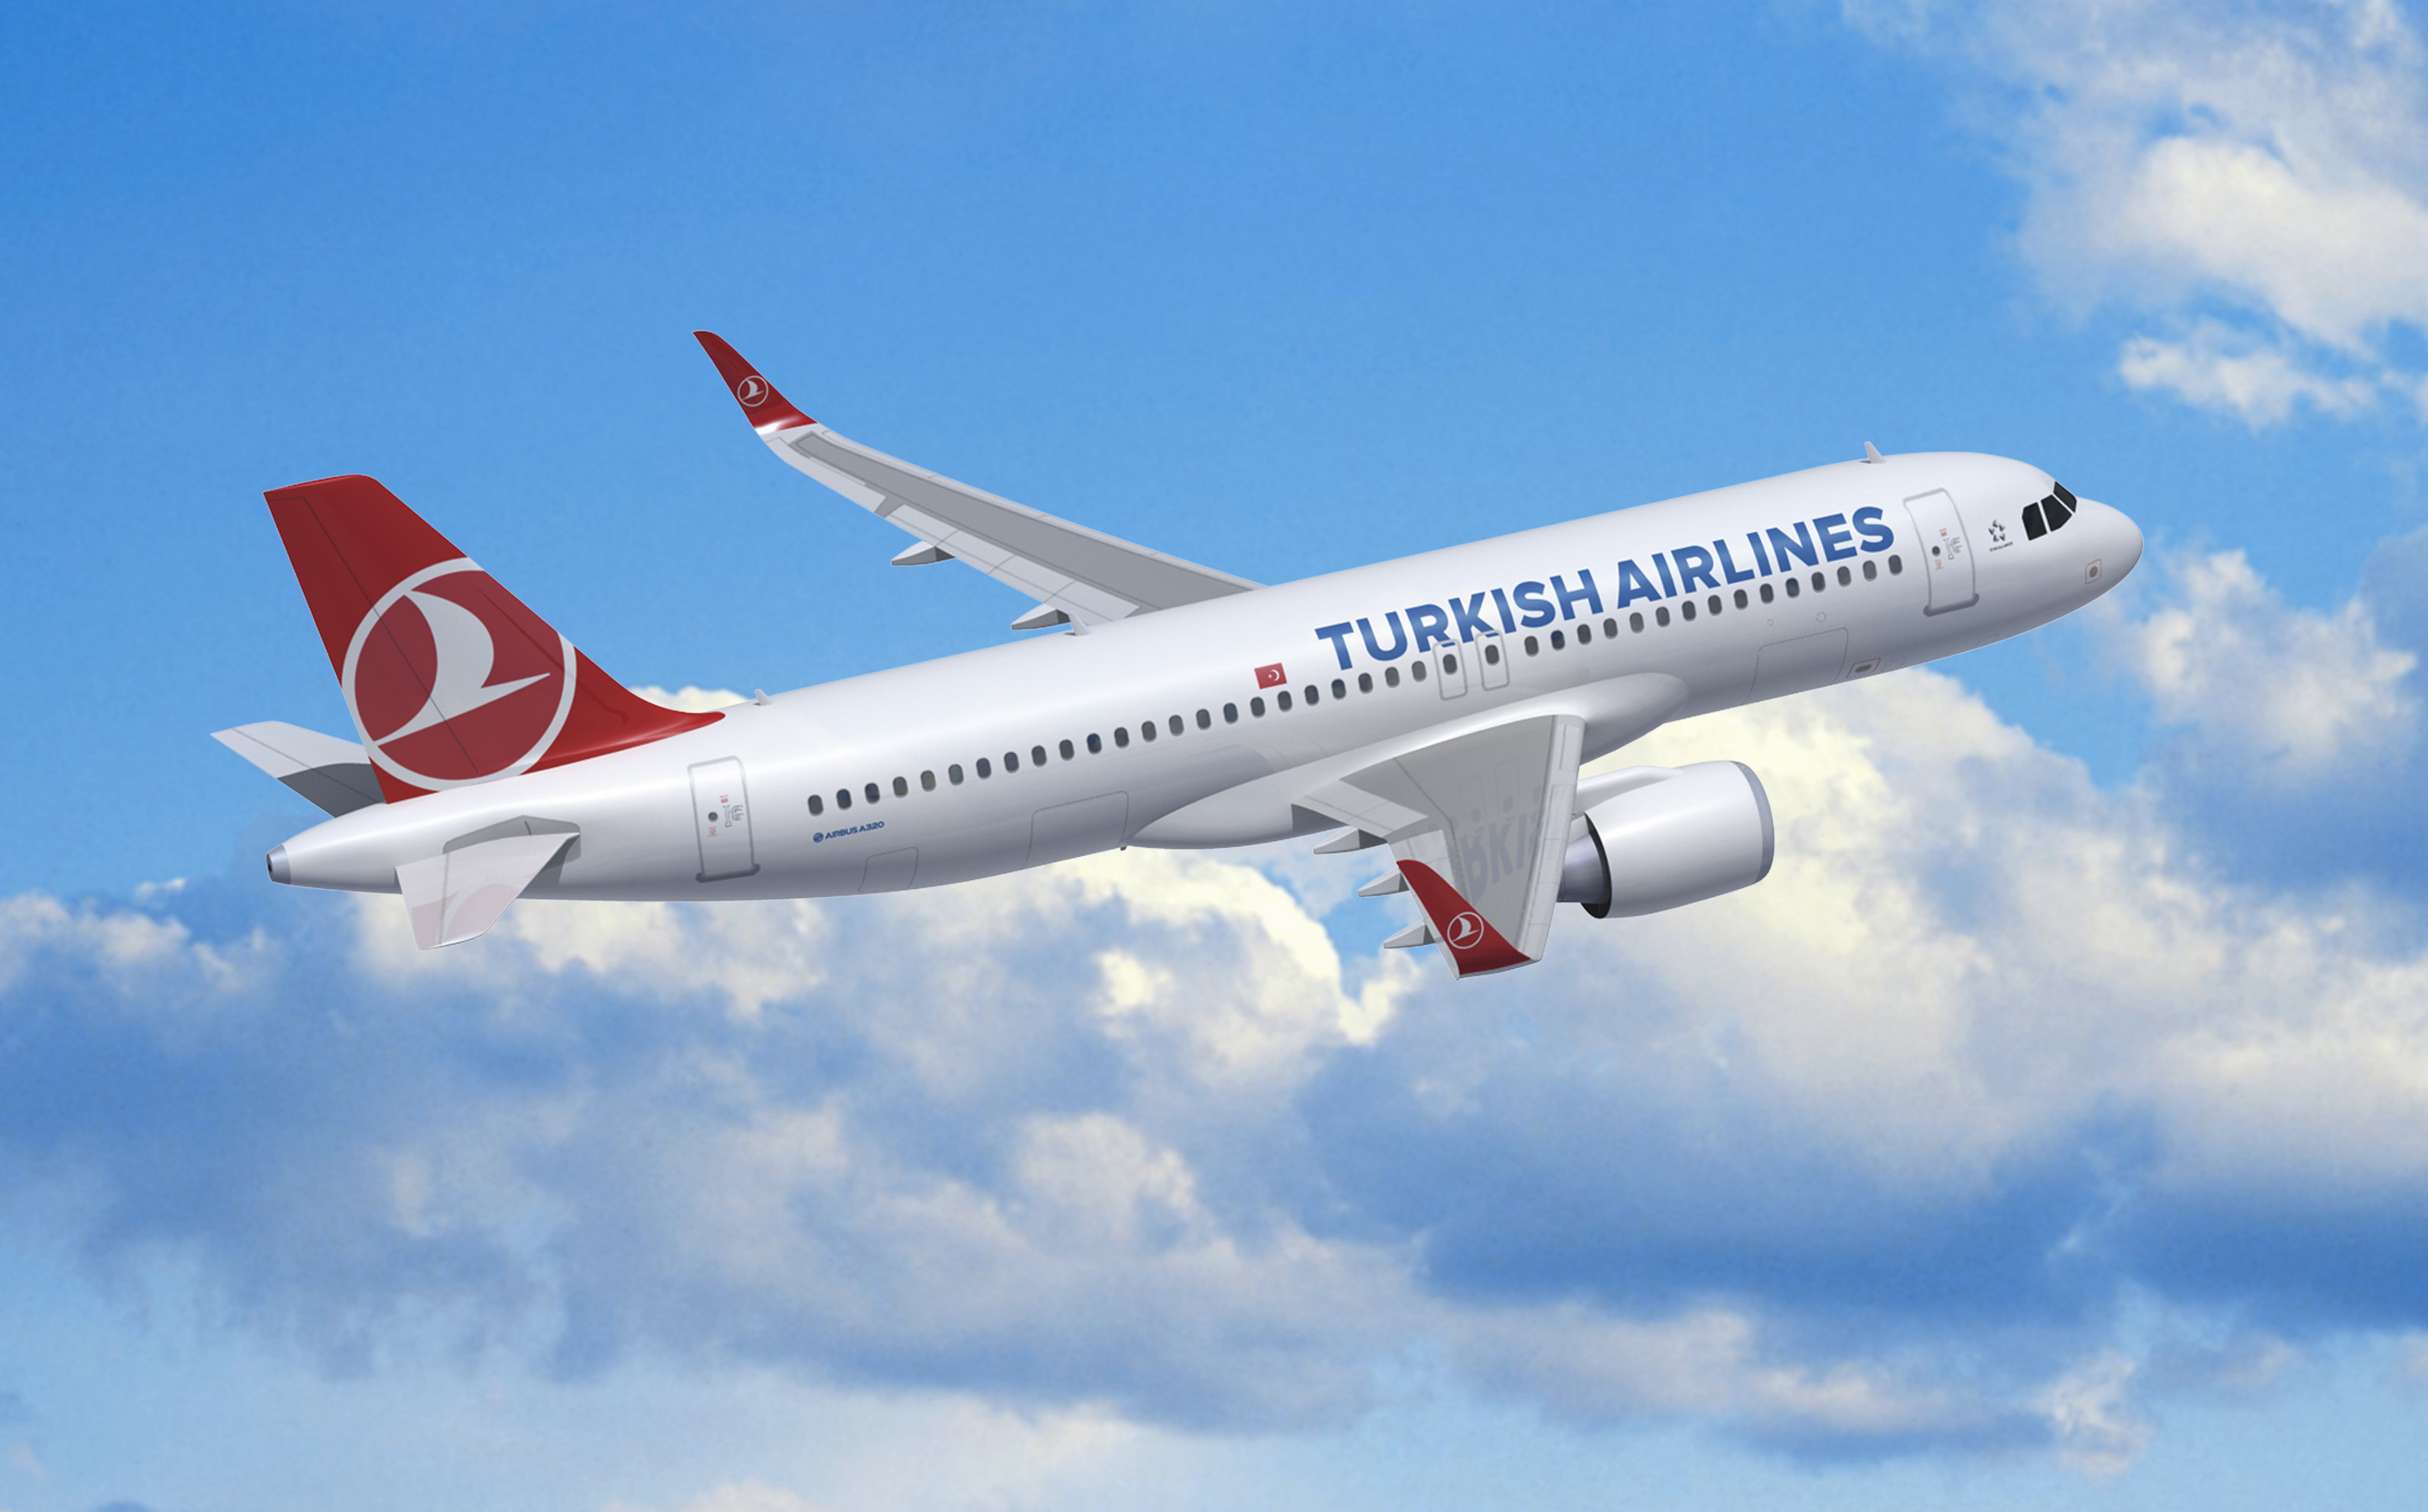 "Турецкие авиалинии" объявили о новых рейсах  в Европу из Анкары